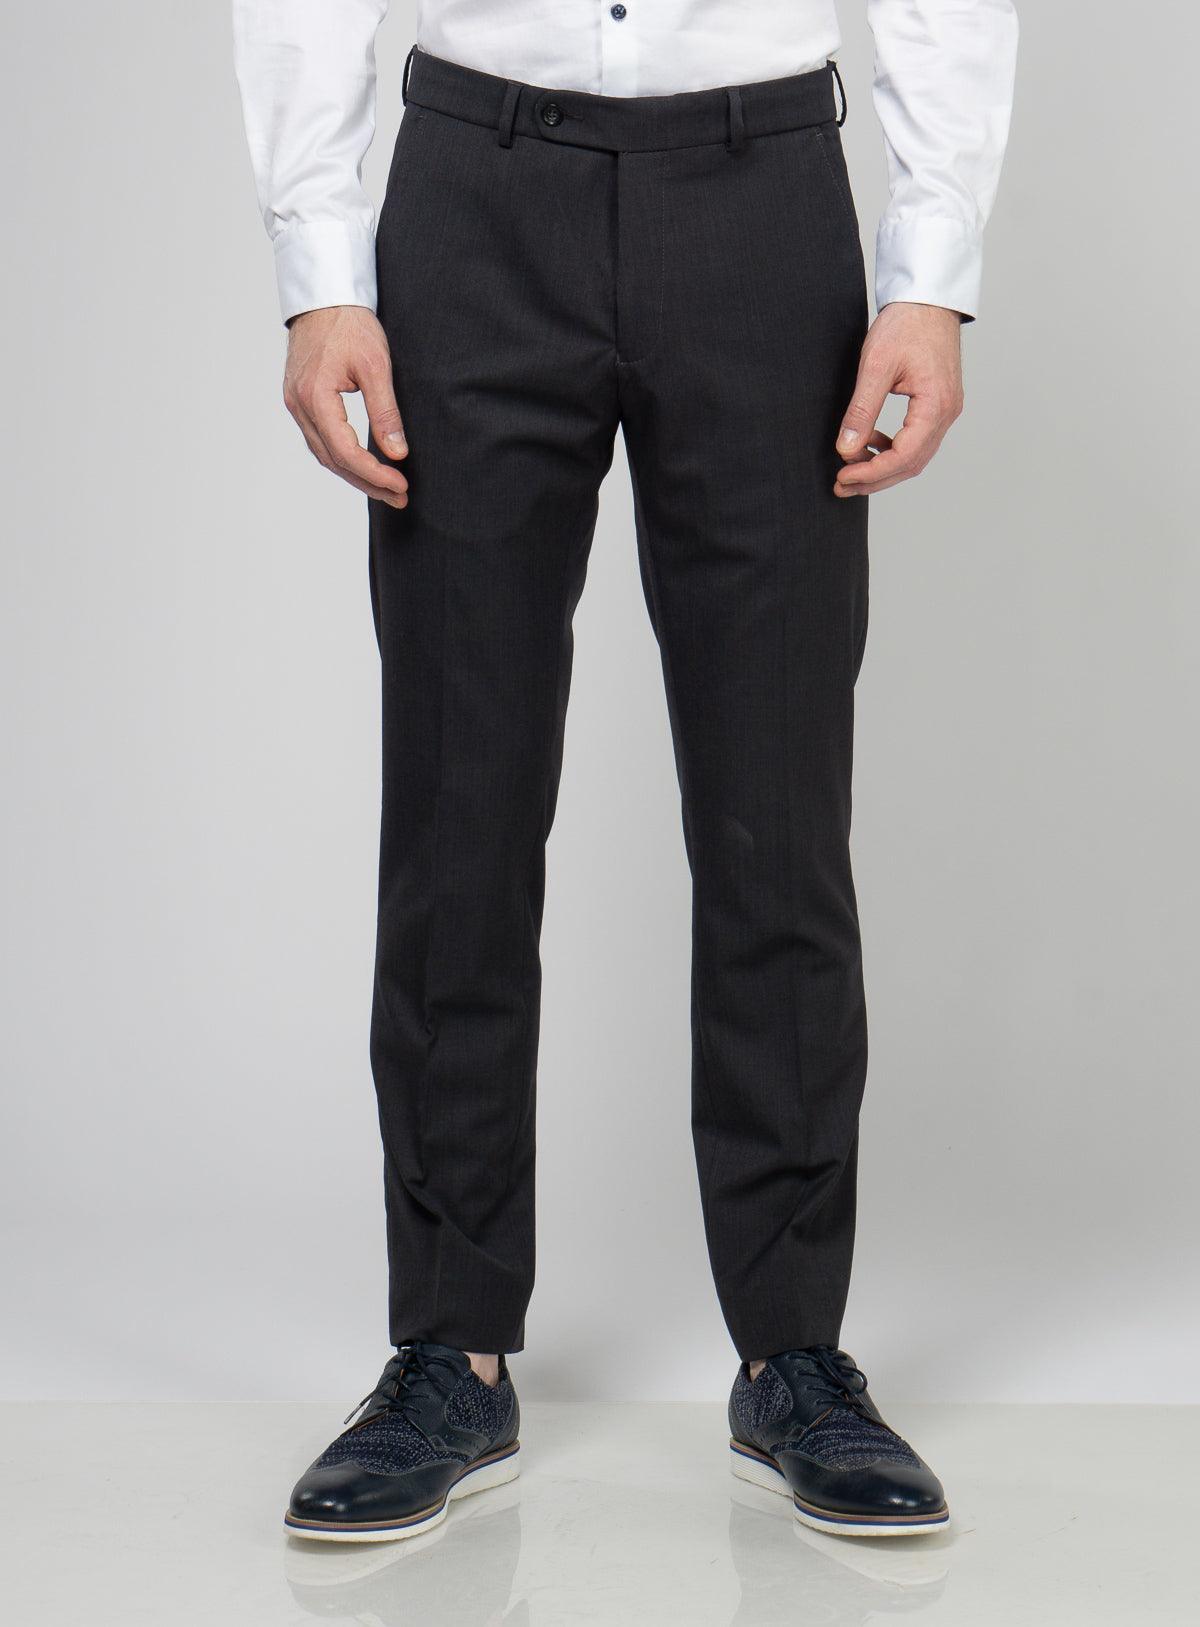 Suit Pants, Suit Pants Online